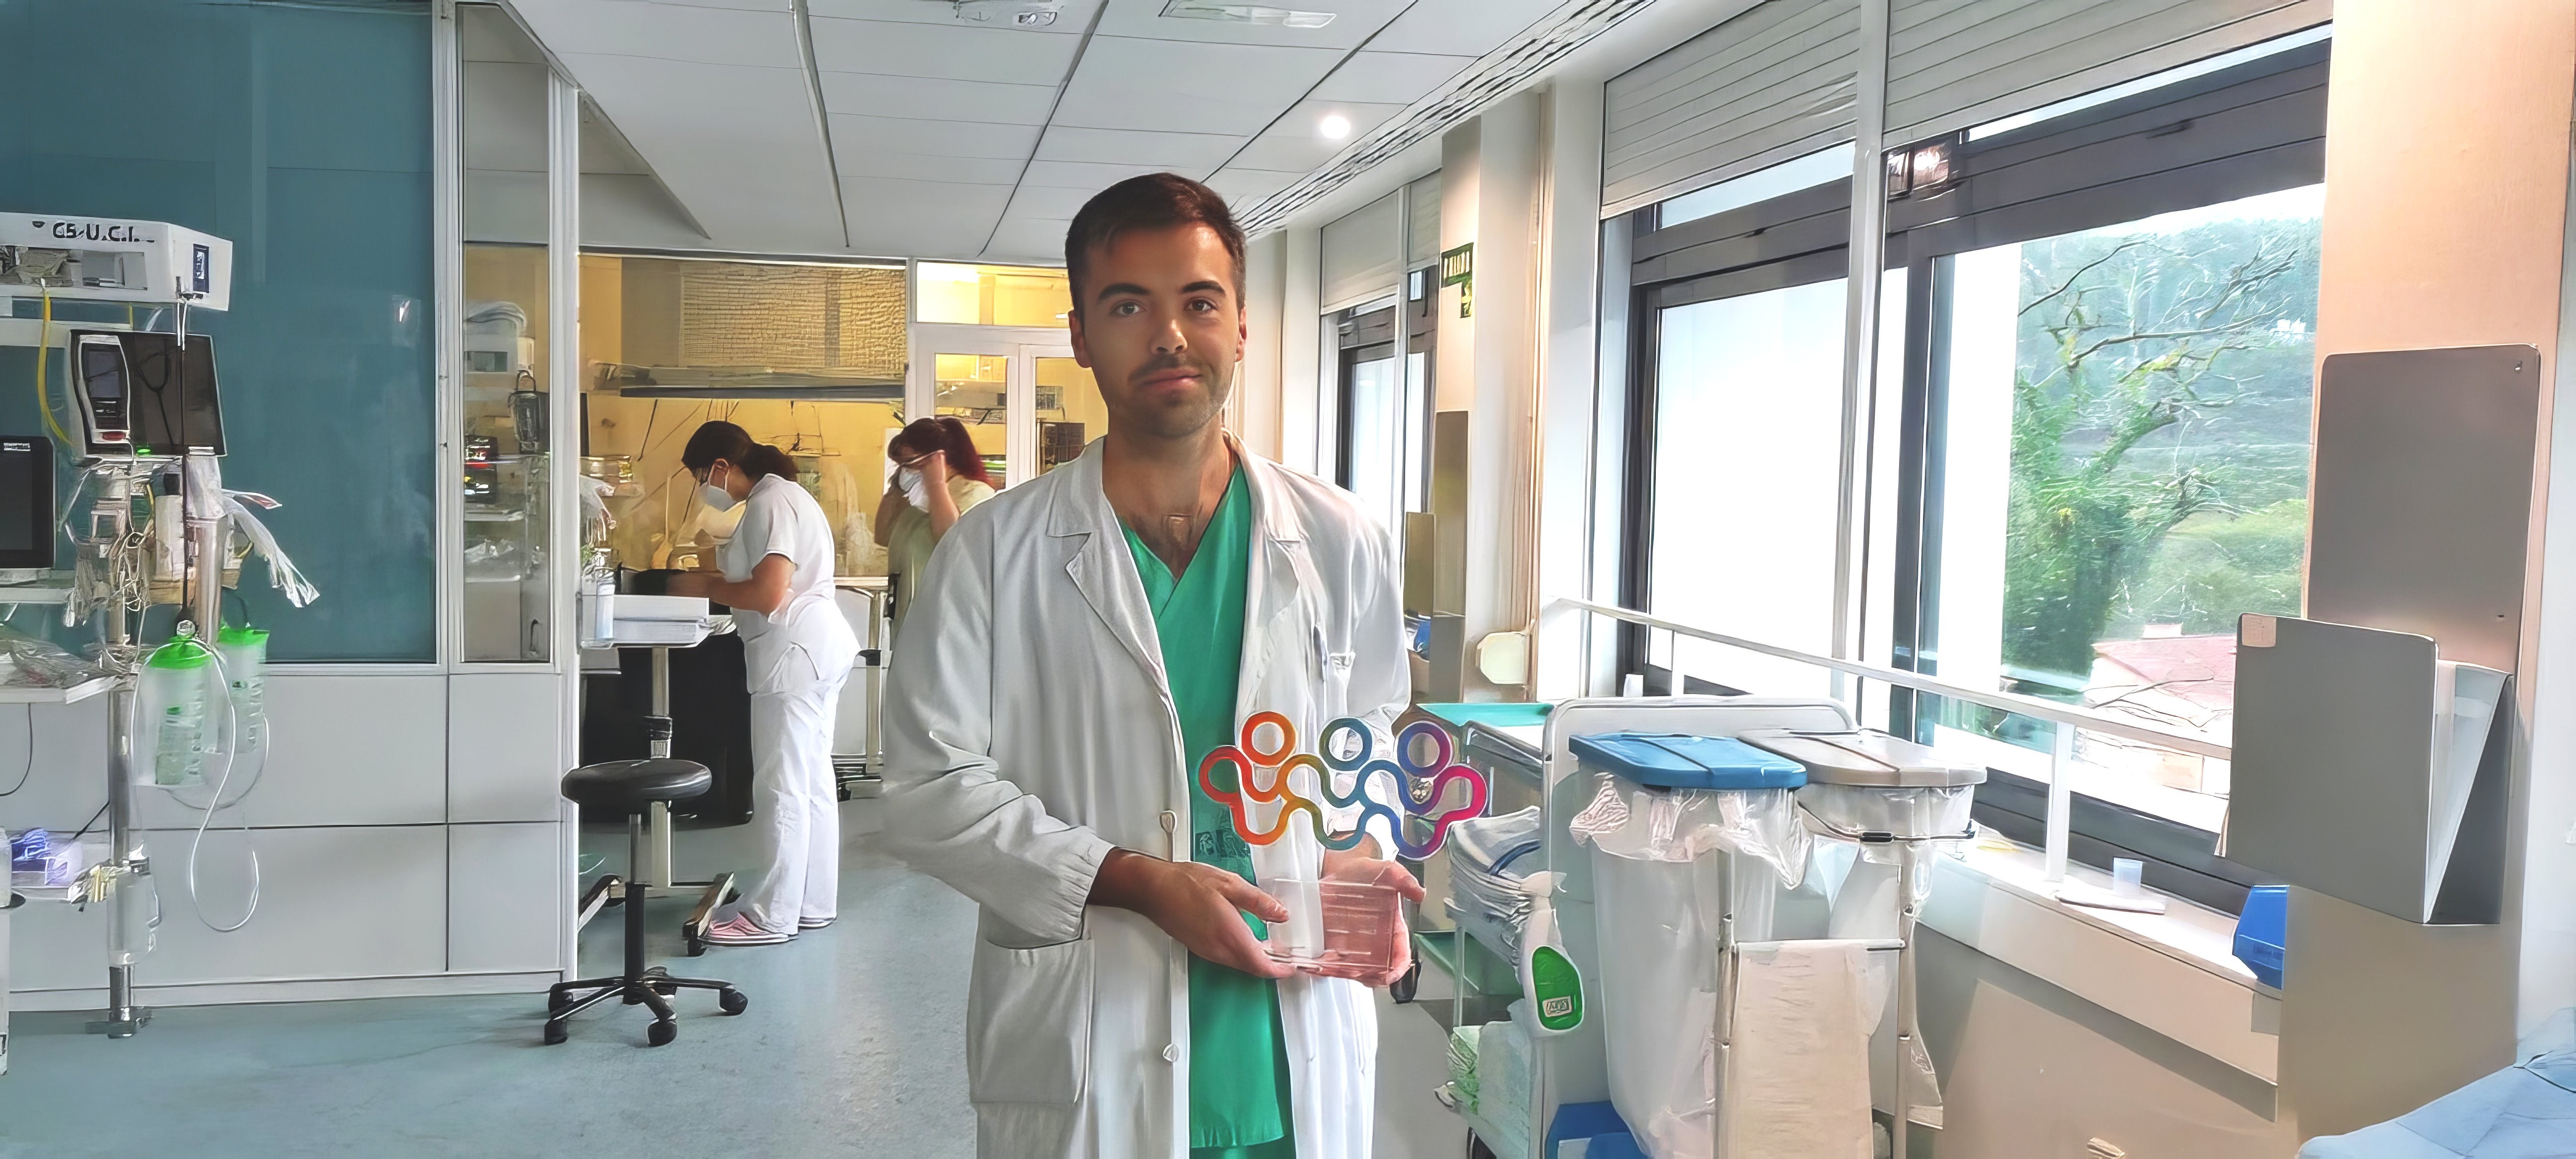 El Dr. Emilio Rodríguez Ruiz posando con el premio de la Cátedra de Humanización